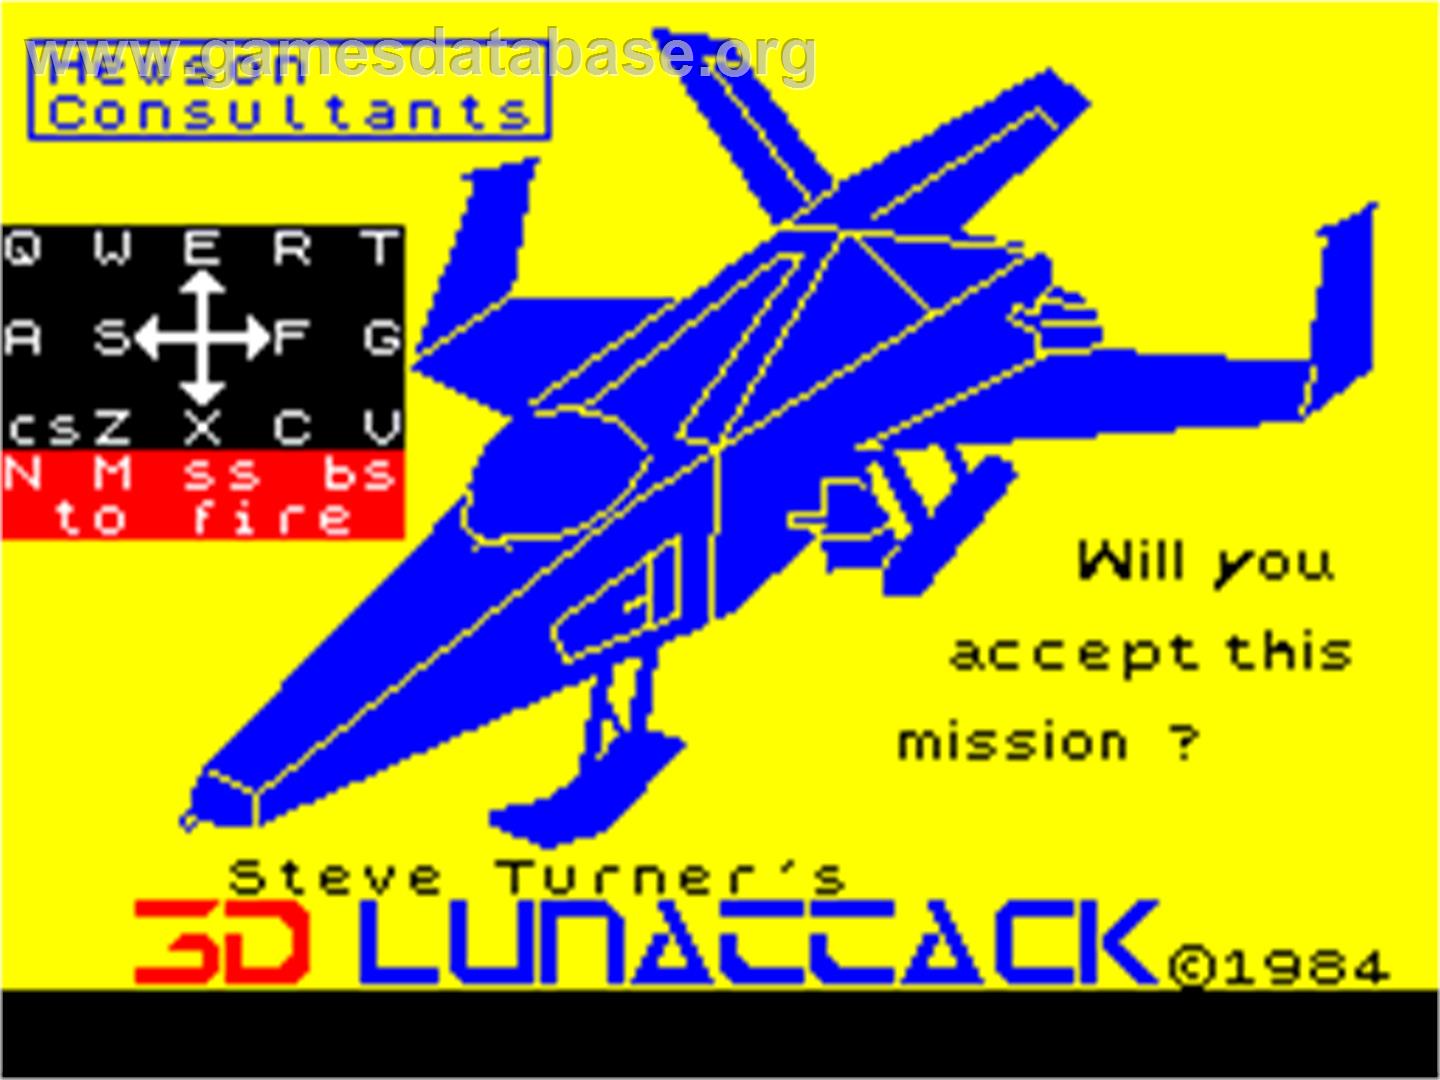 3D Lunattack - Sinclair ZX Spectrum - Artwork - Title Screen